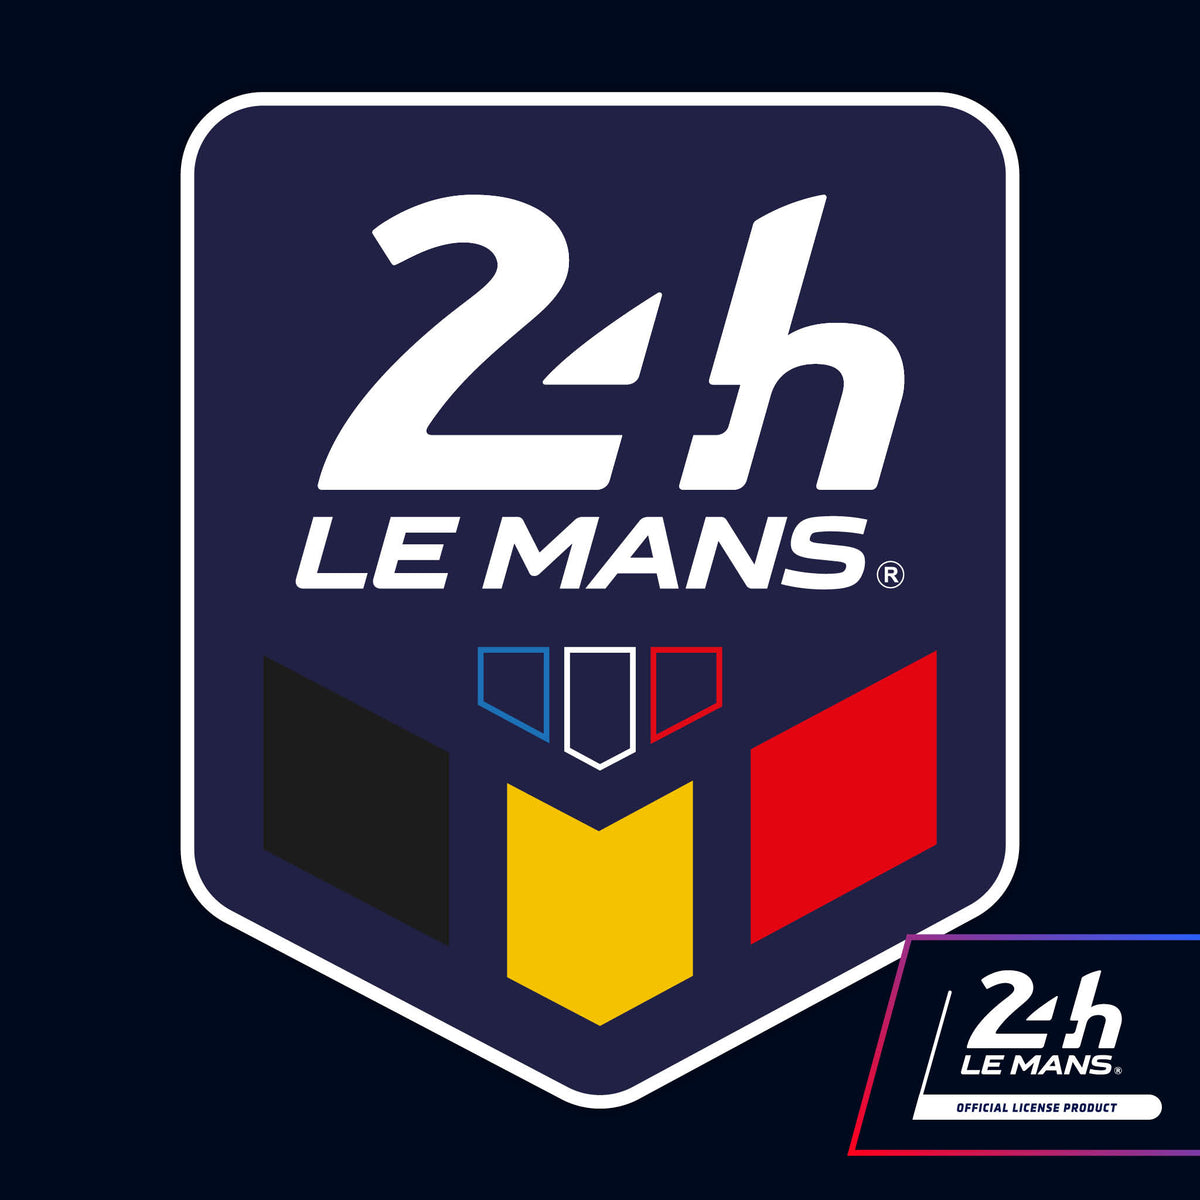 Official Le Mans 24h Chevron Badge Sticker